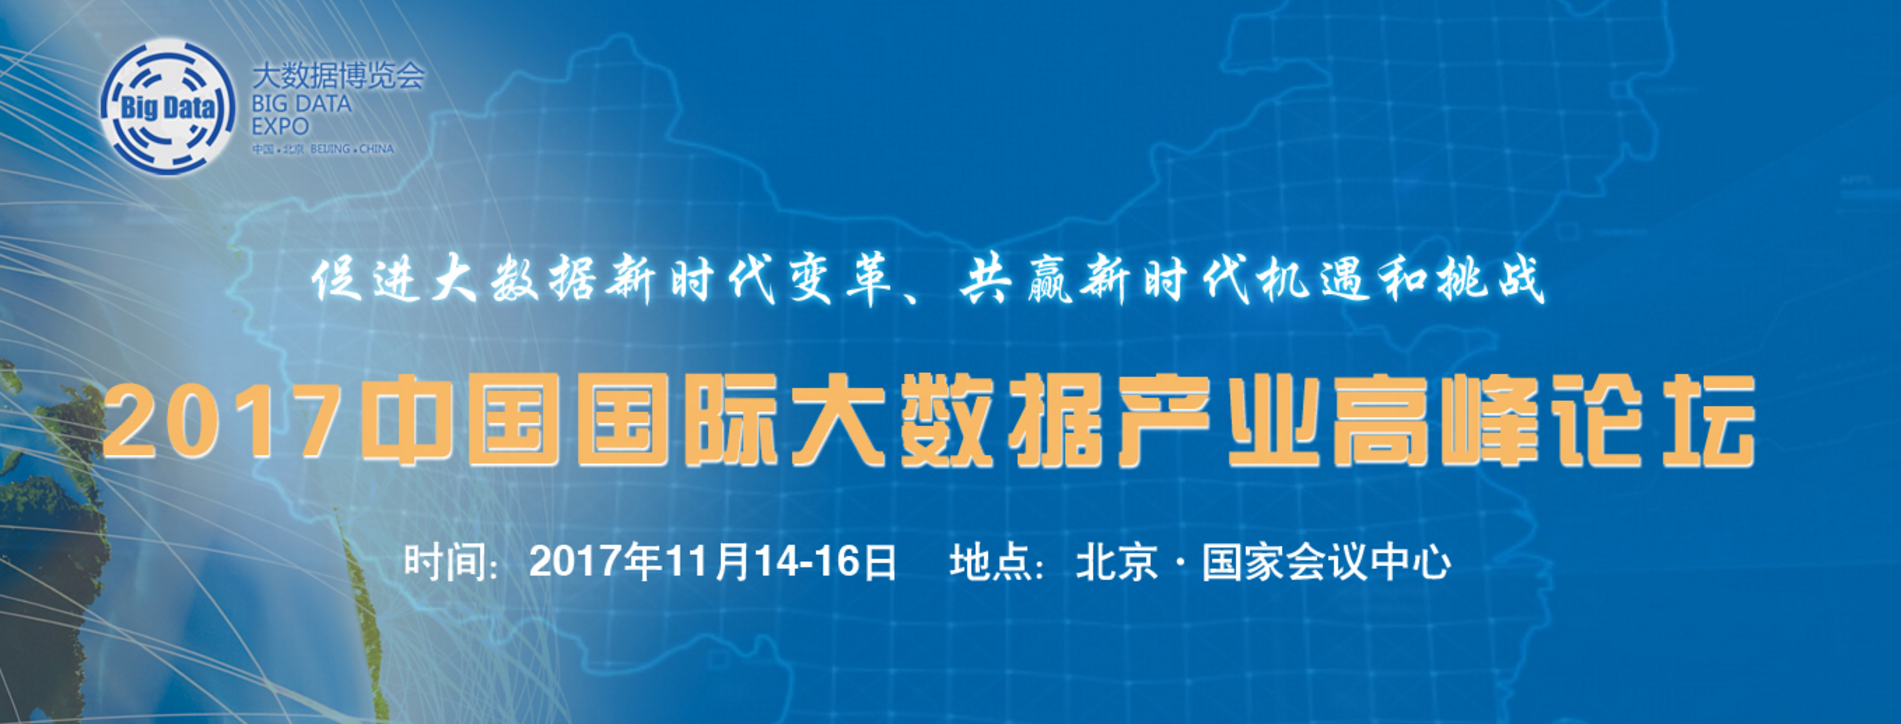 2017第二届中国（北京）国际大数据产业博览会暨高峰论坛